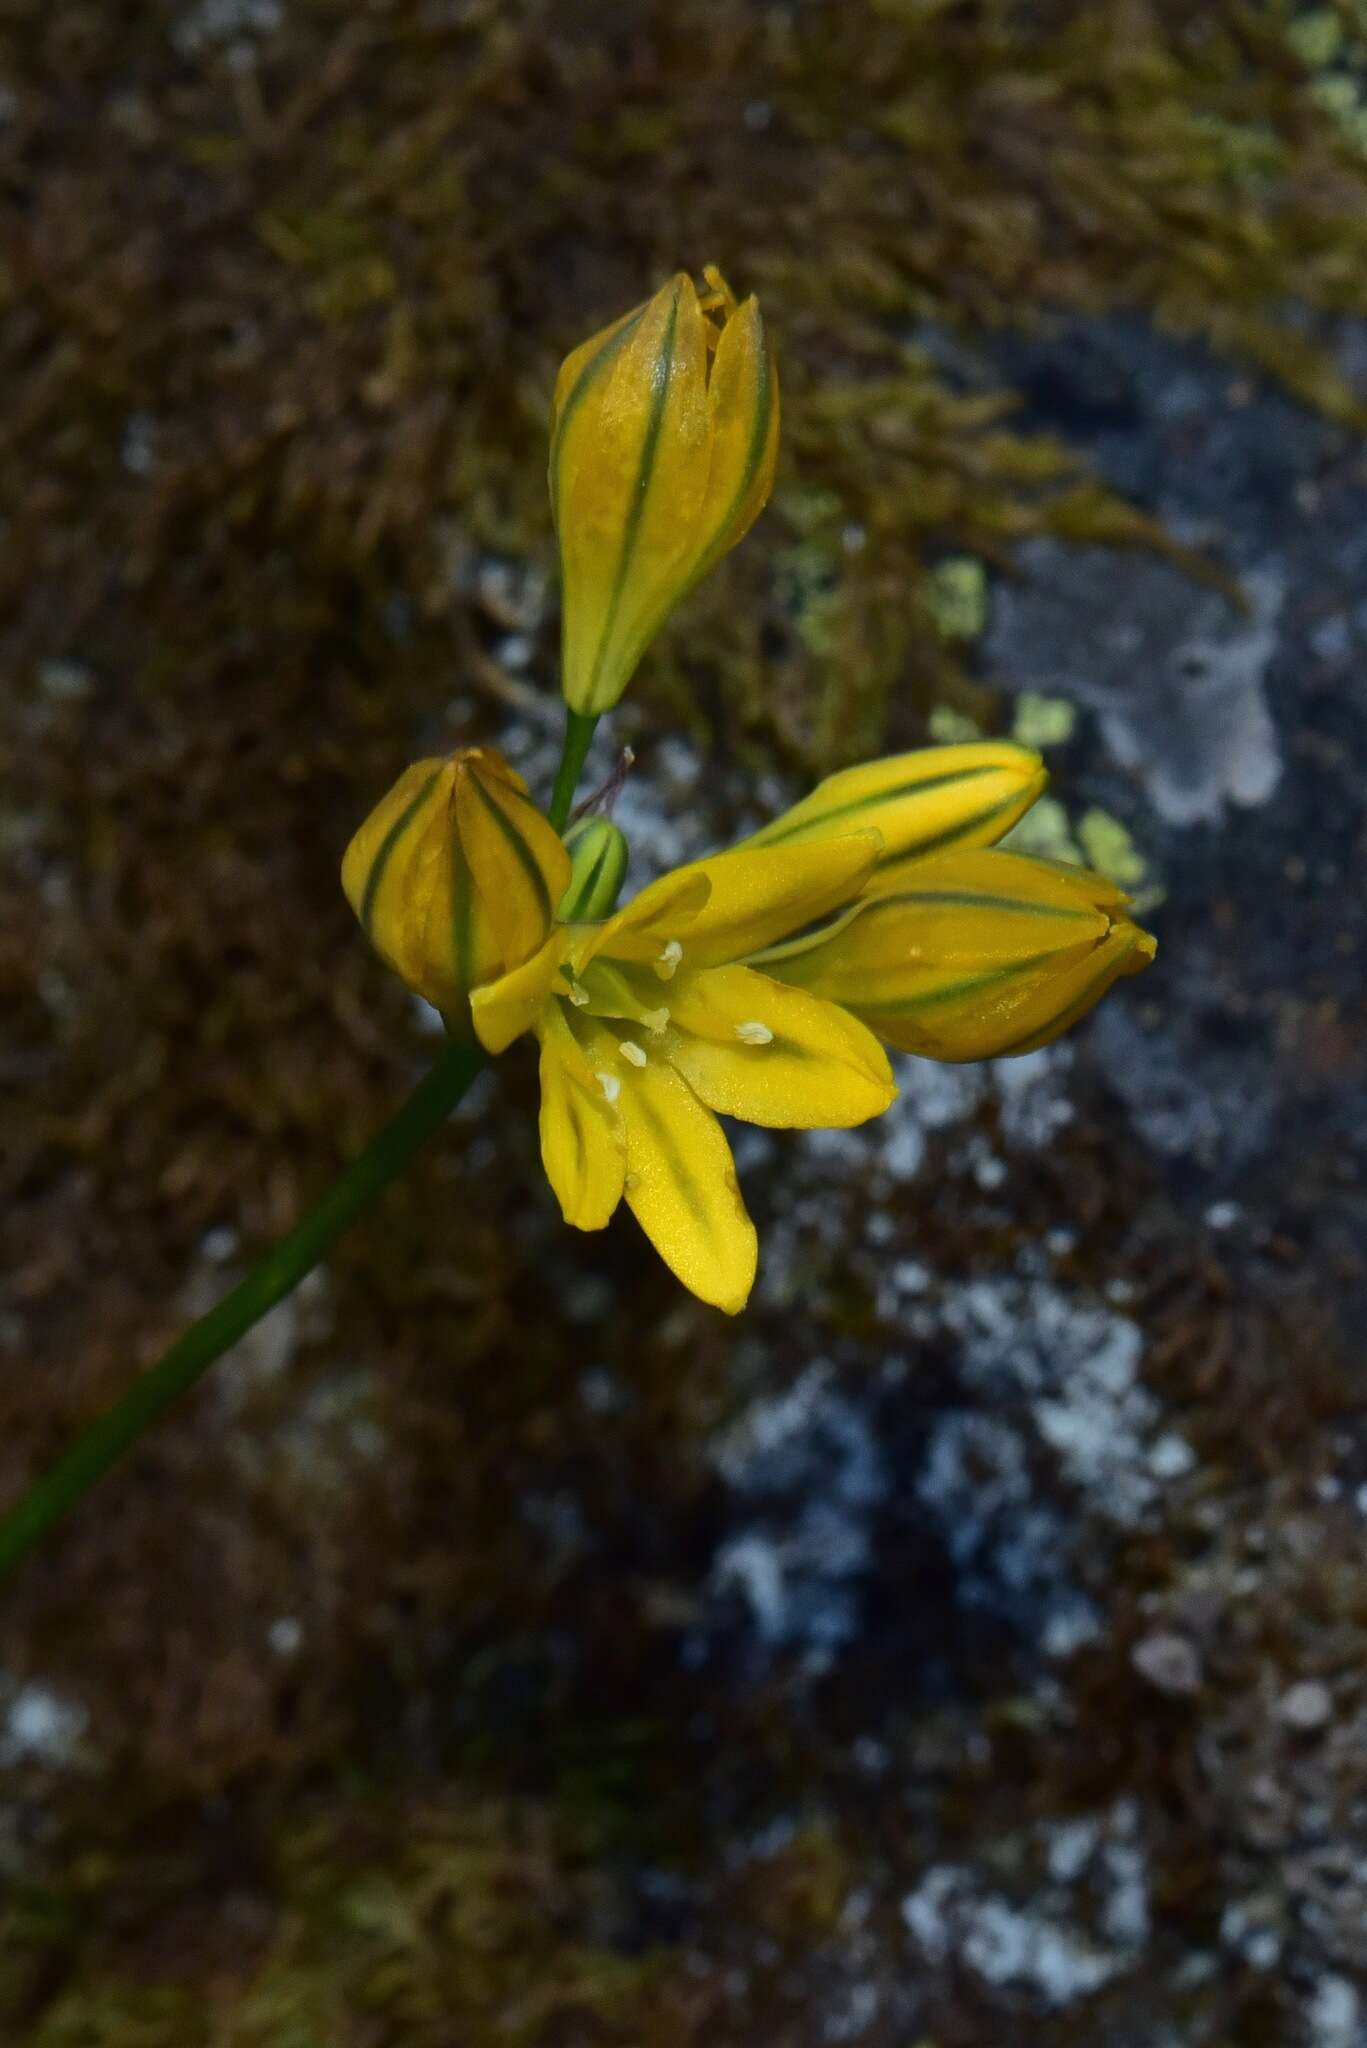 Image of yellow triteleia